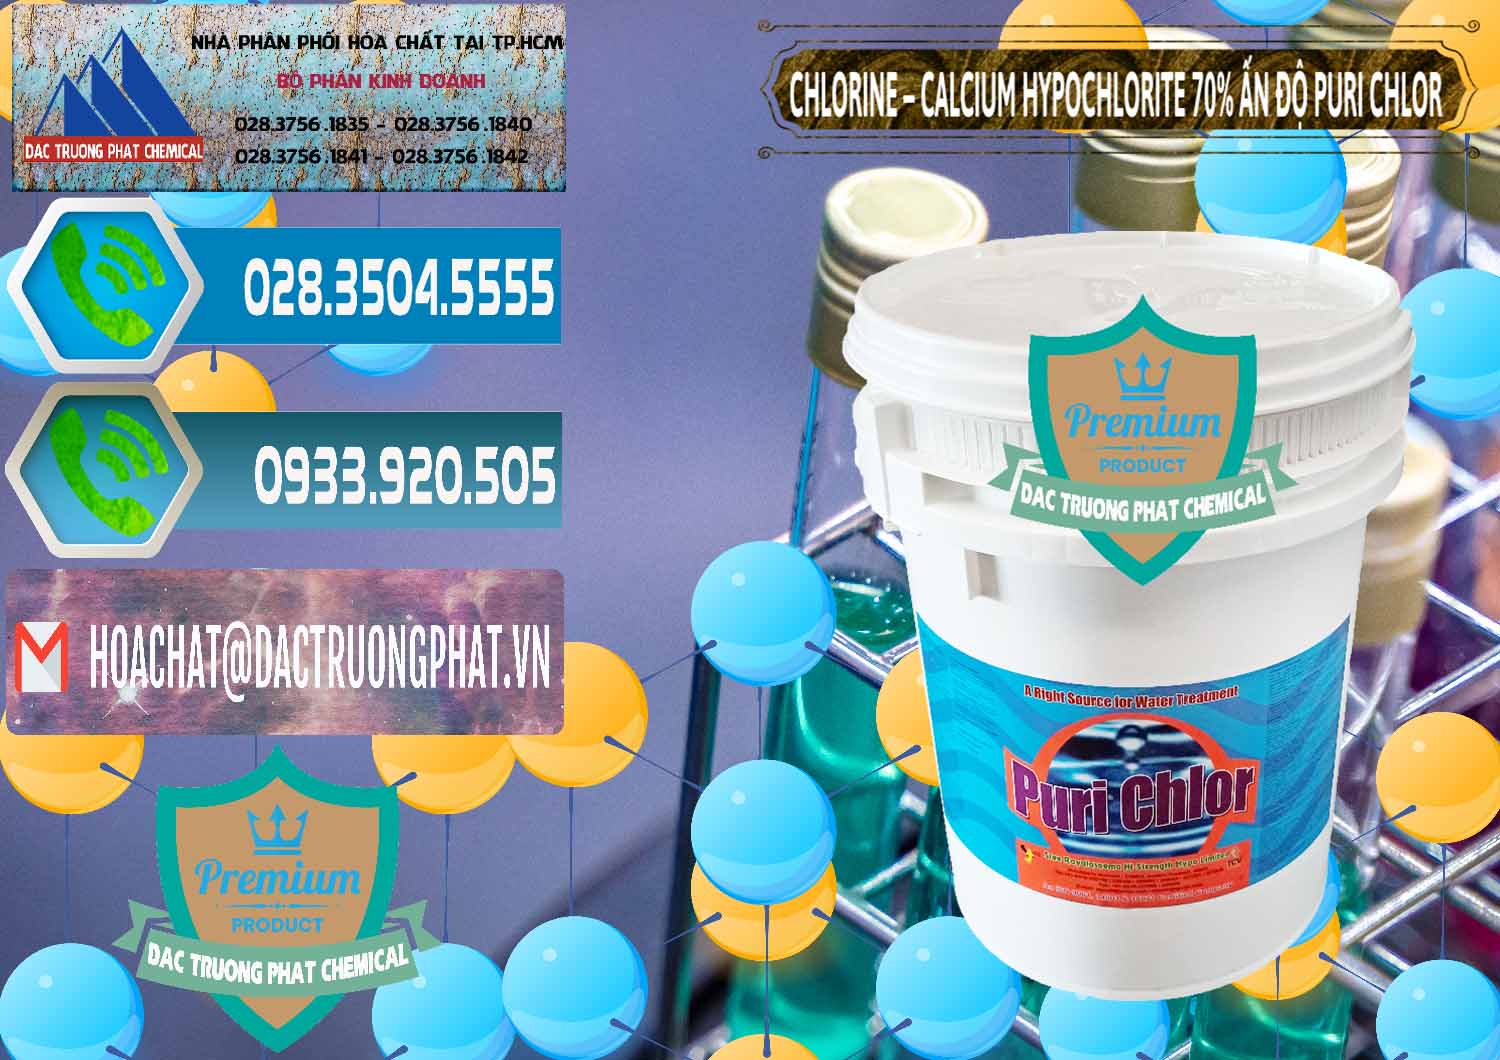 Cty chuyên bán - cung ứng Chlorine – Clorin 70% Puri Chlo Ấn Độ India - 0123 - Nơi chuyên bán và cung cấp hóa chất tại TP.HCM - congtyhoachat.net